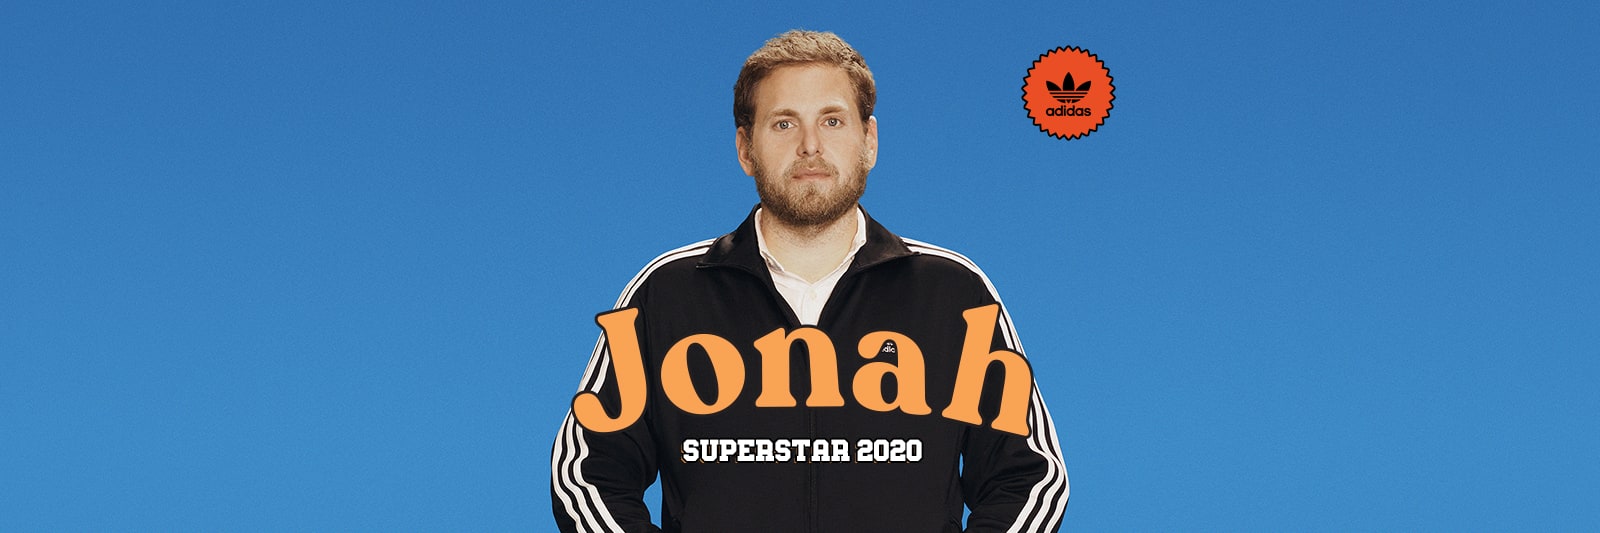 Джона Хилл снял рекламный ролик для Adidas superstar